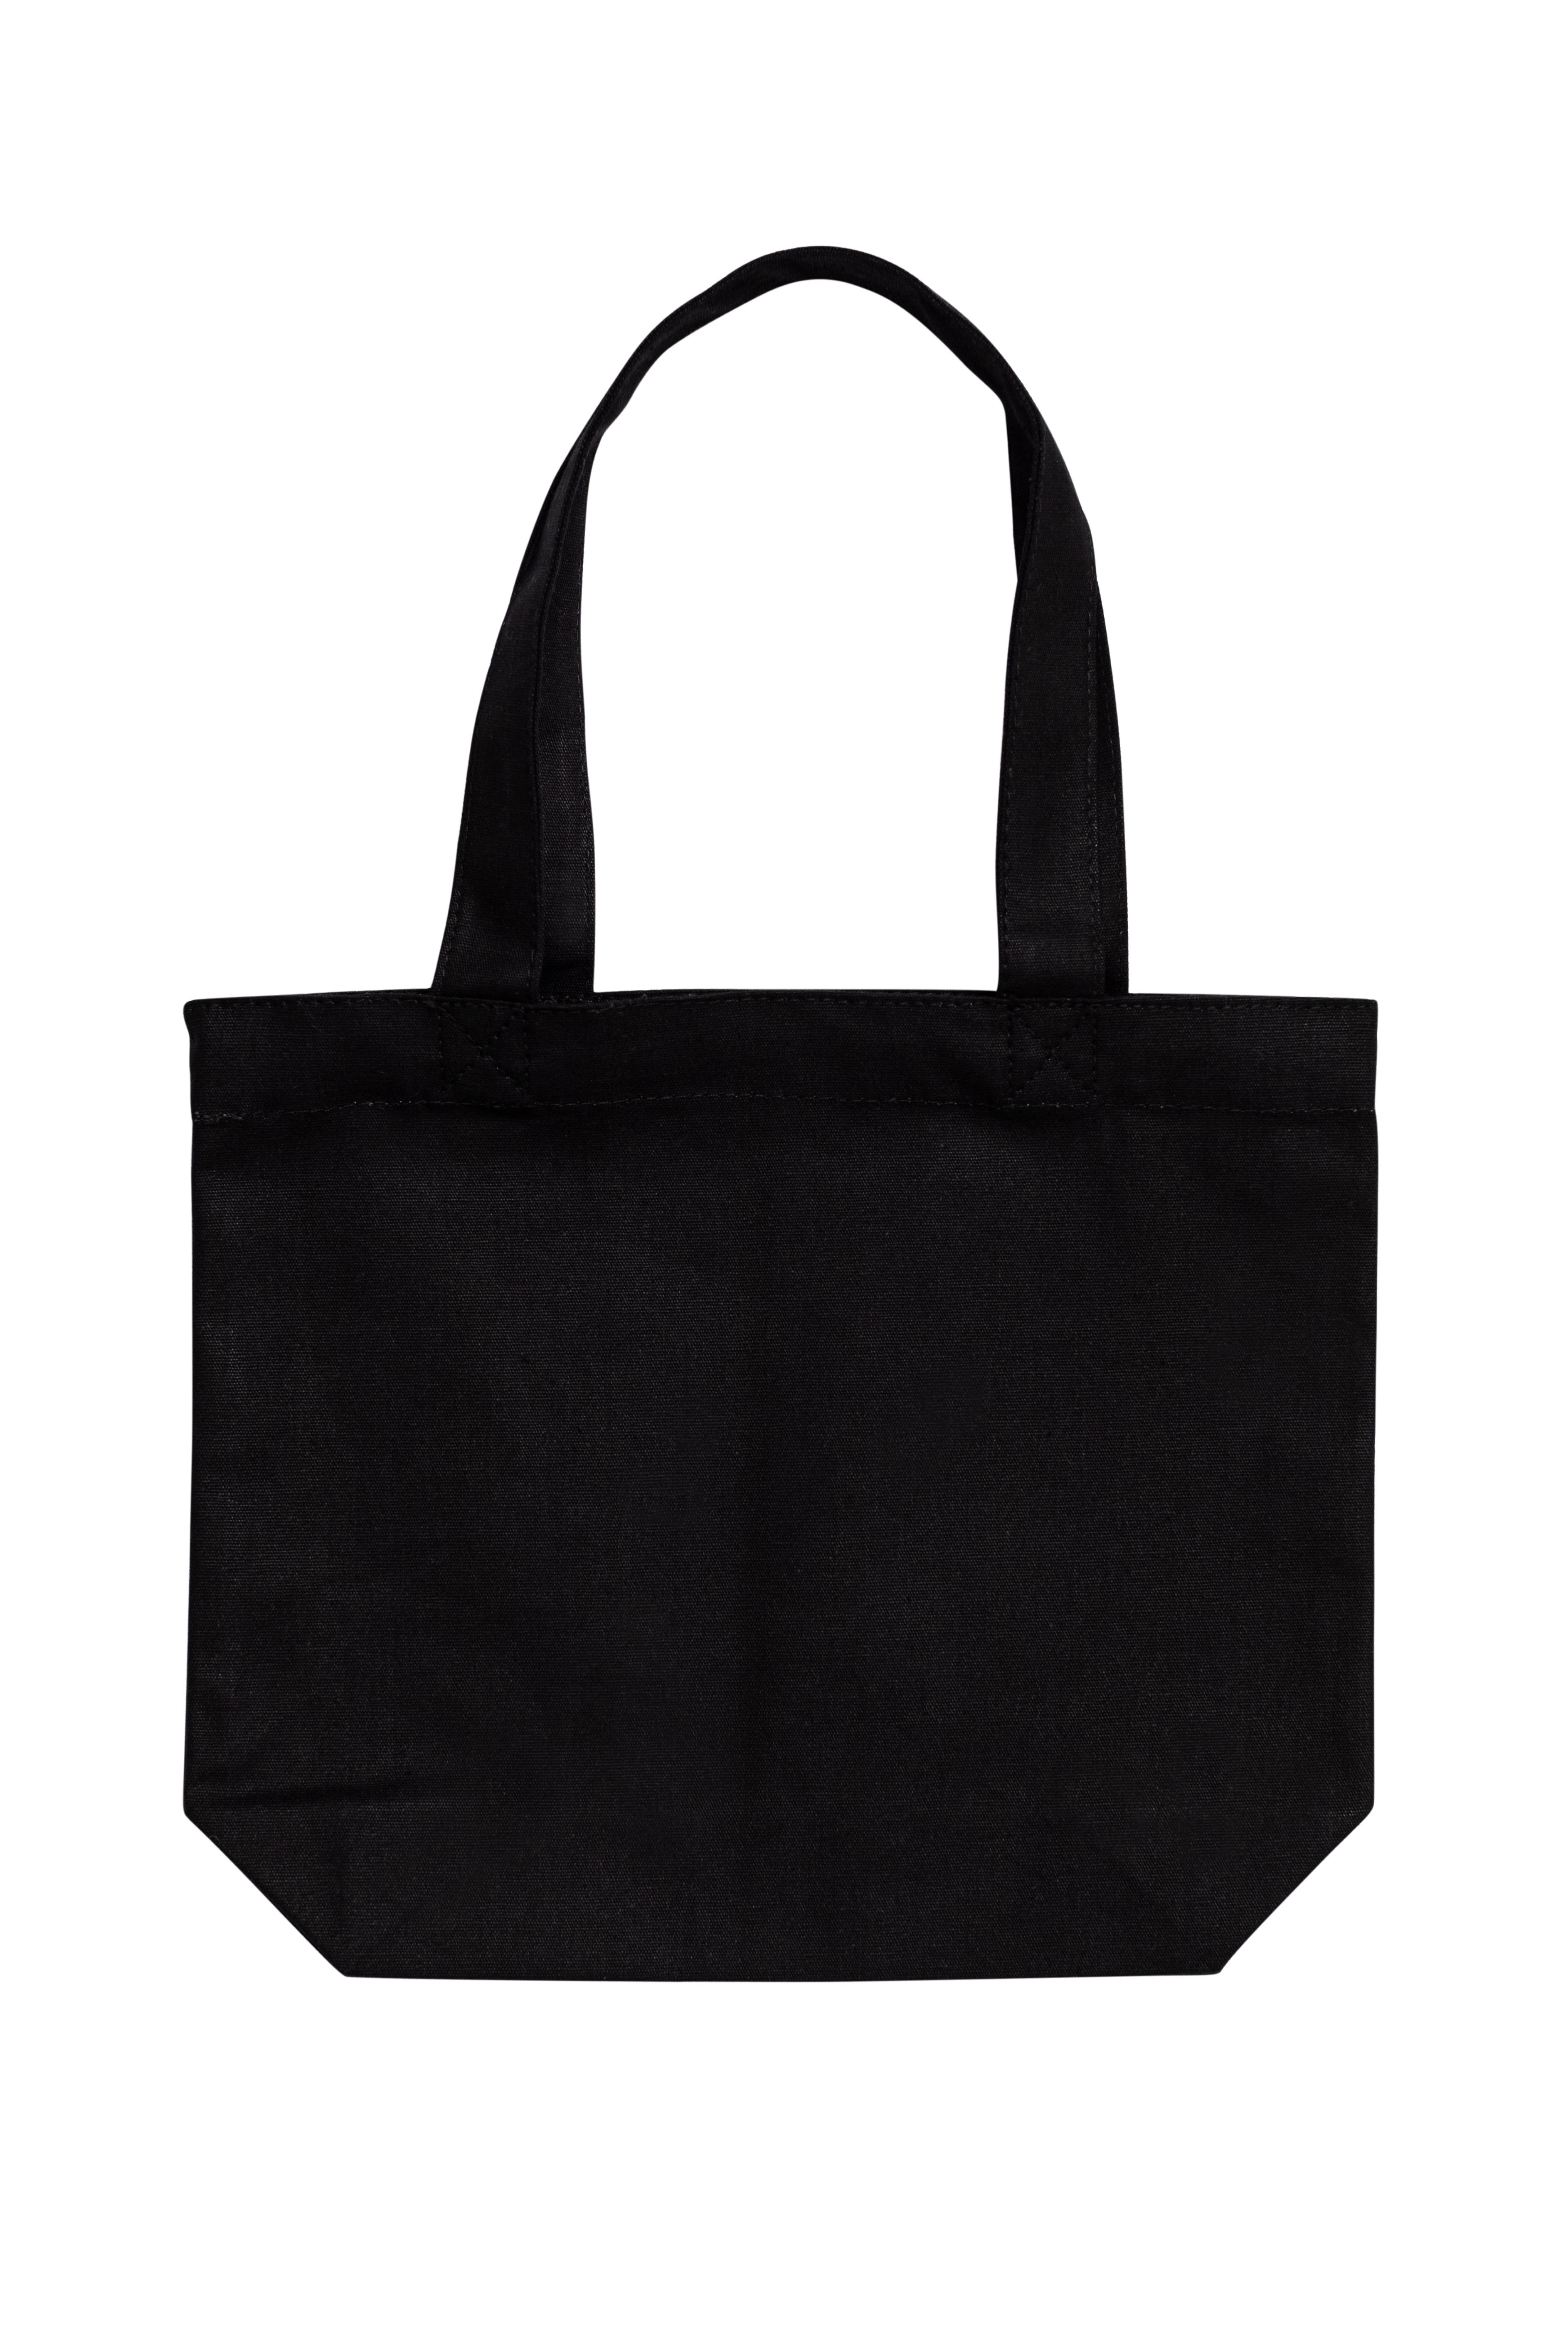 Canvas Bags Handbag Shopper Cute Tote Bag Zipper Small Shoulder